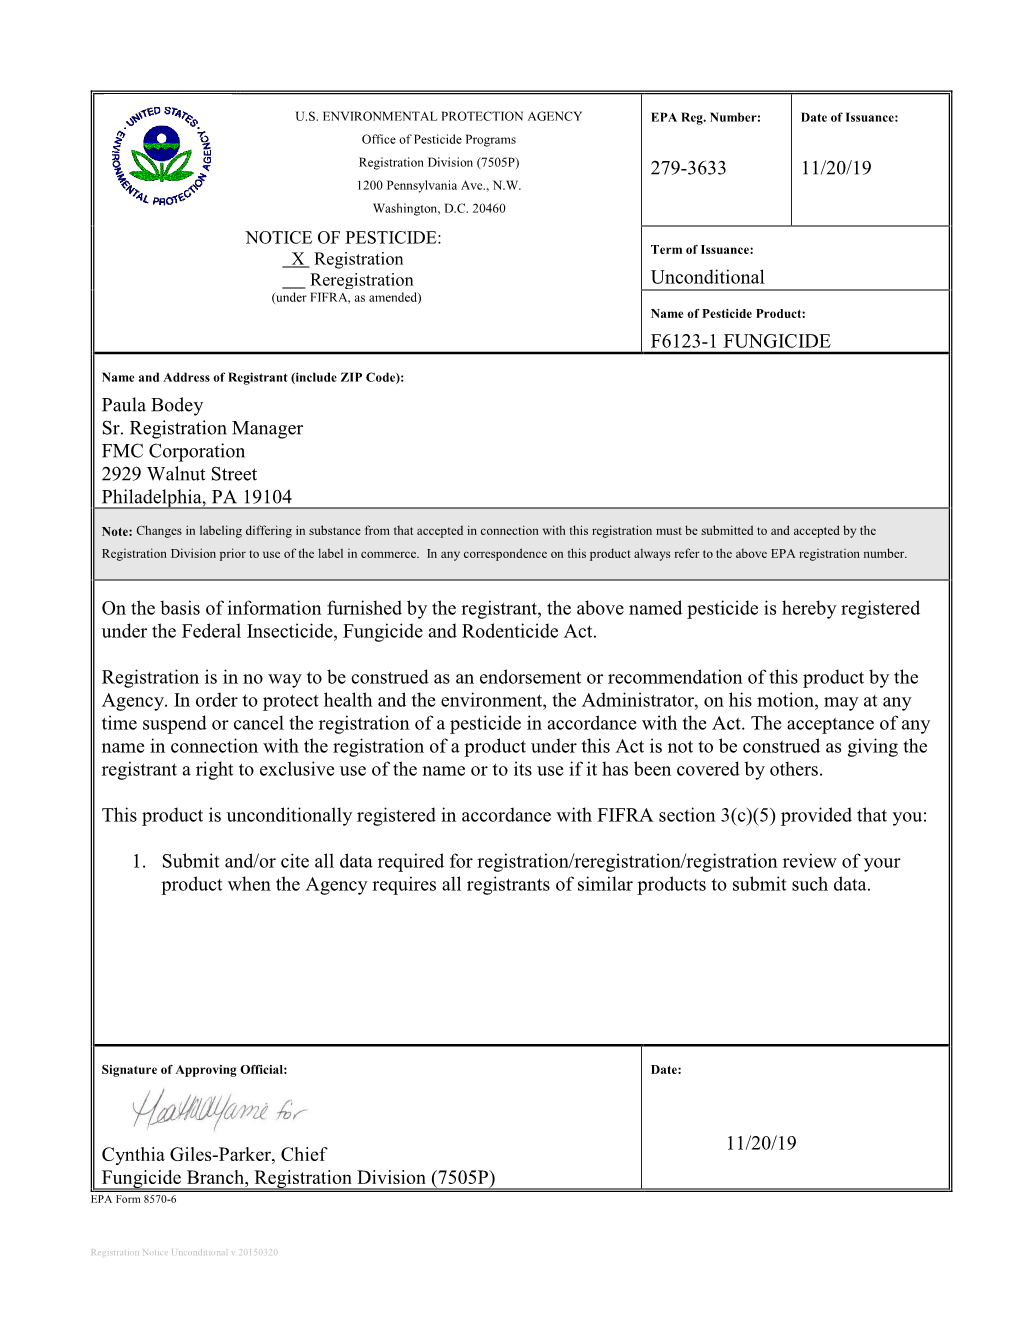 US EPA, Pesticide Product Label, F6123-1 Fungicide,11/20/2019